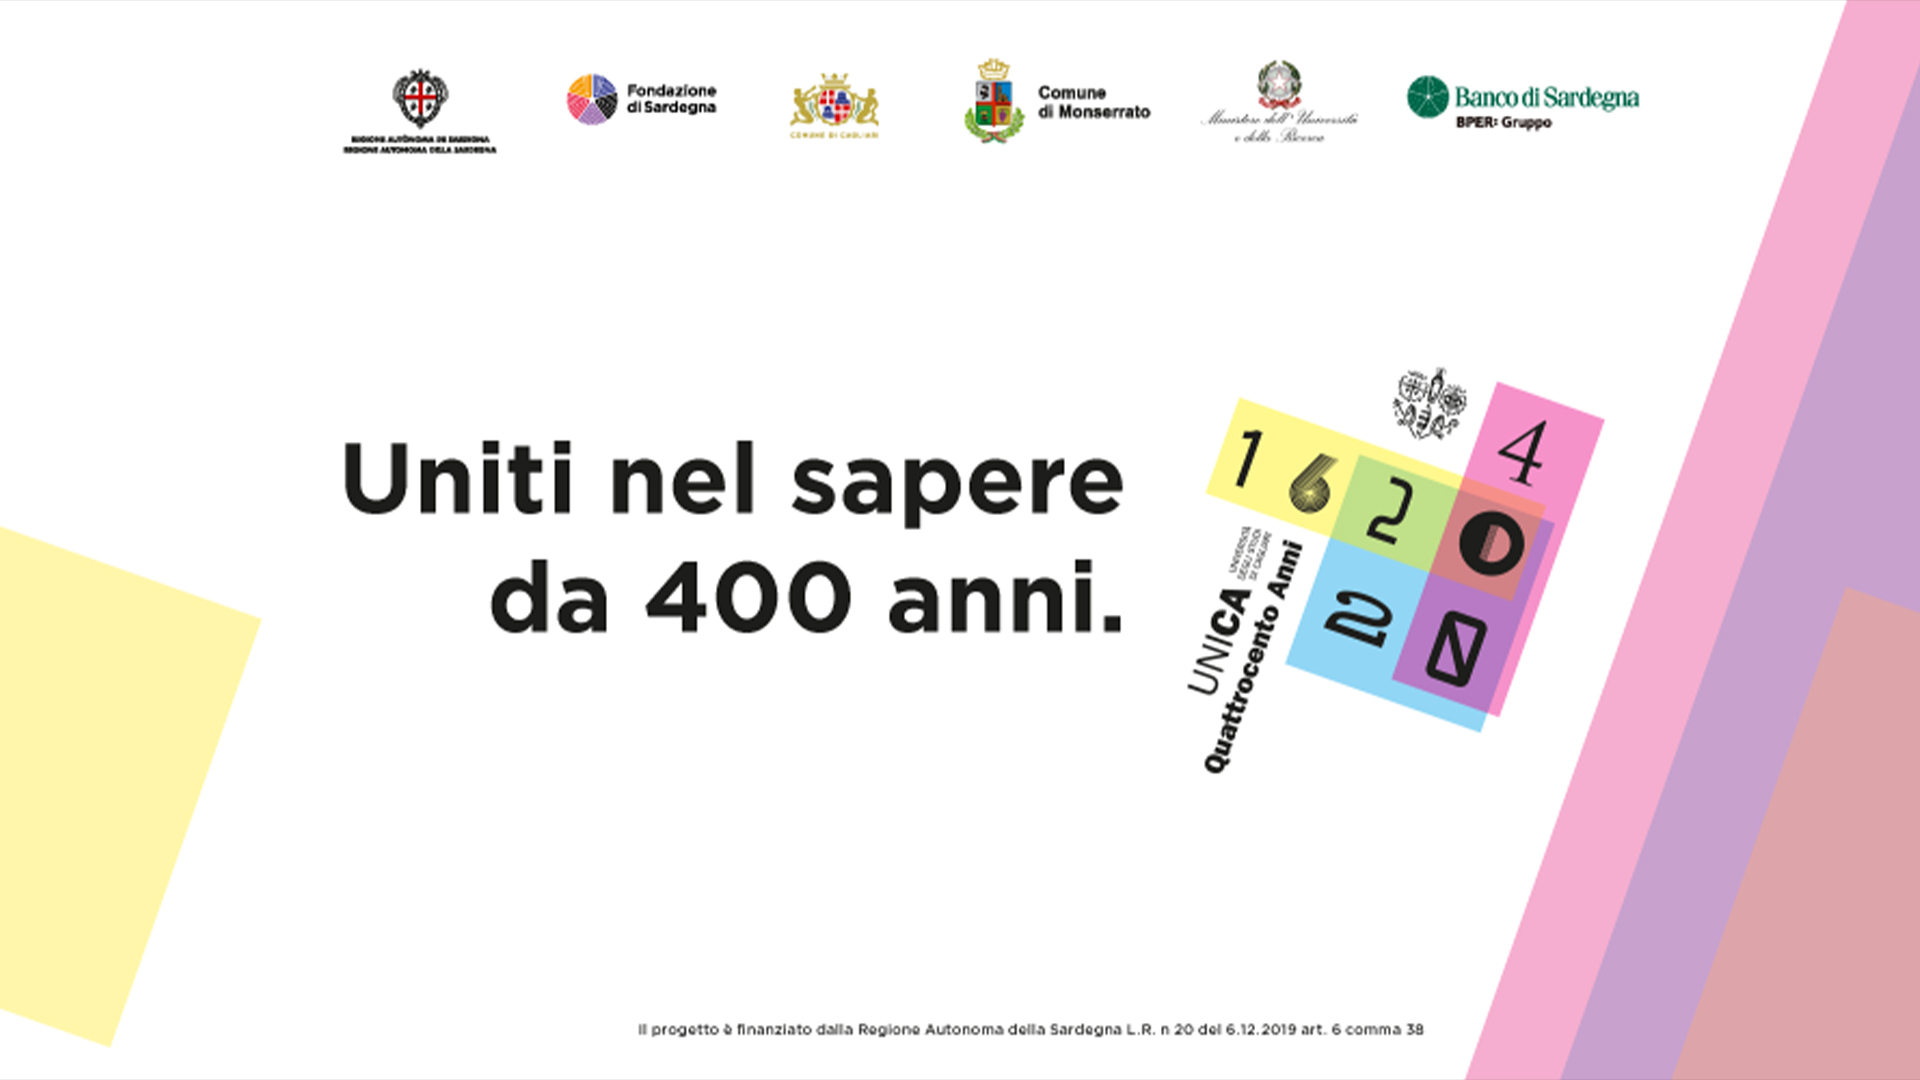 ASI - L’Agenzia Spaziale Italiana partecipa alle celebrazioni dei 400 anni dell’Università degli Studi di Cagliari